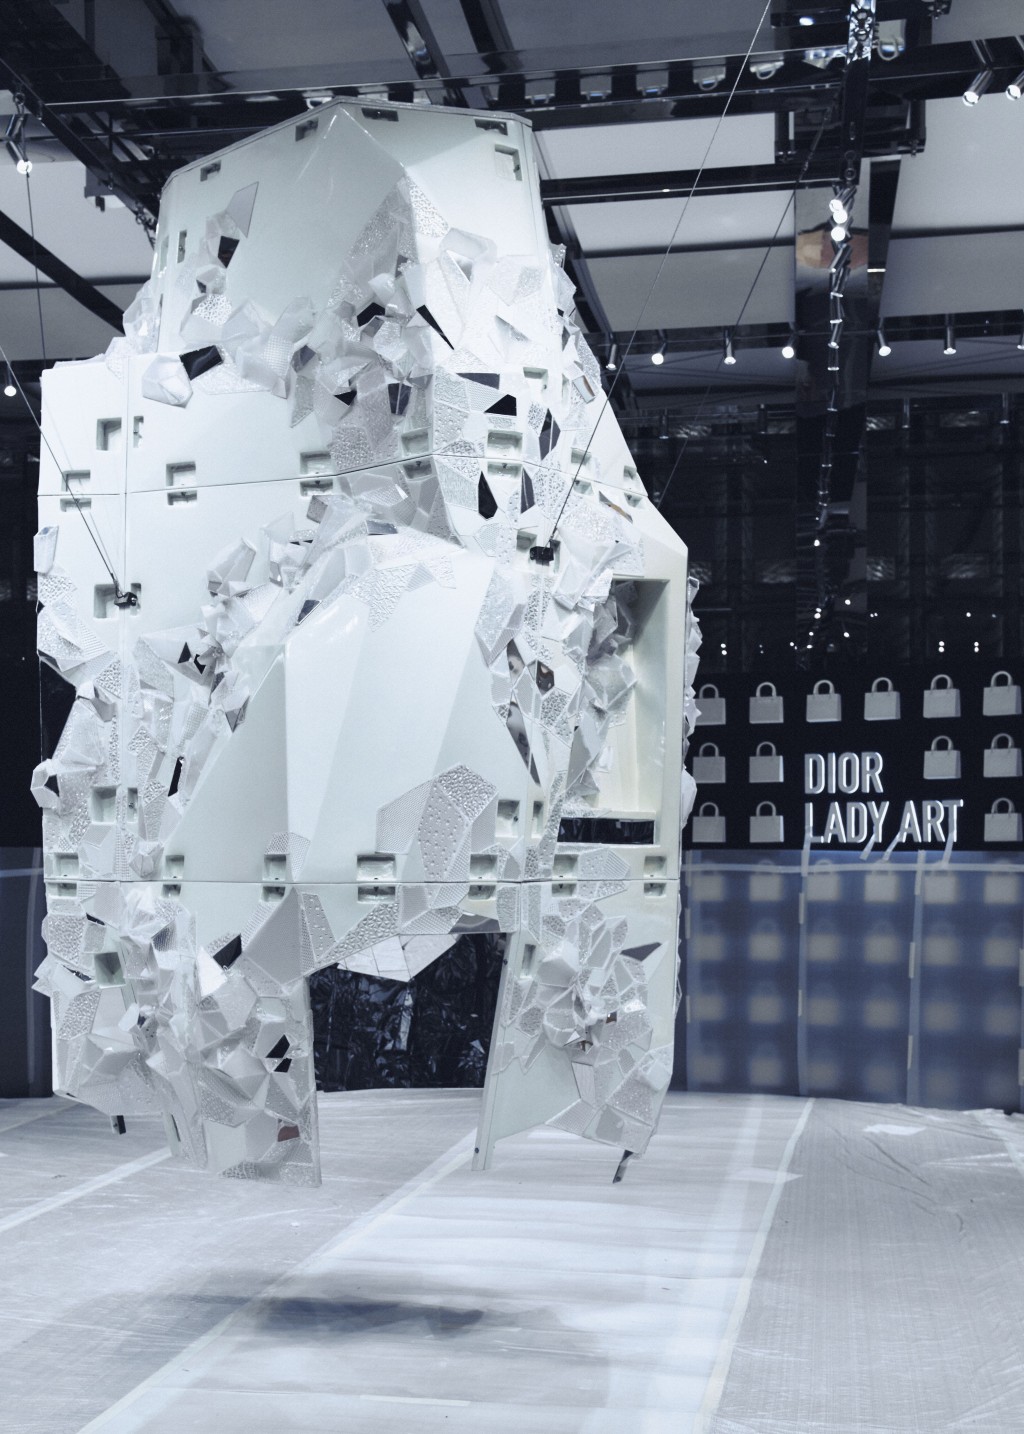 韓國藝術家Lee Bul創作的巨型雕塑Cella，為展覽場地製造吸睛焦點。